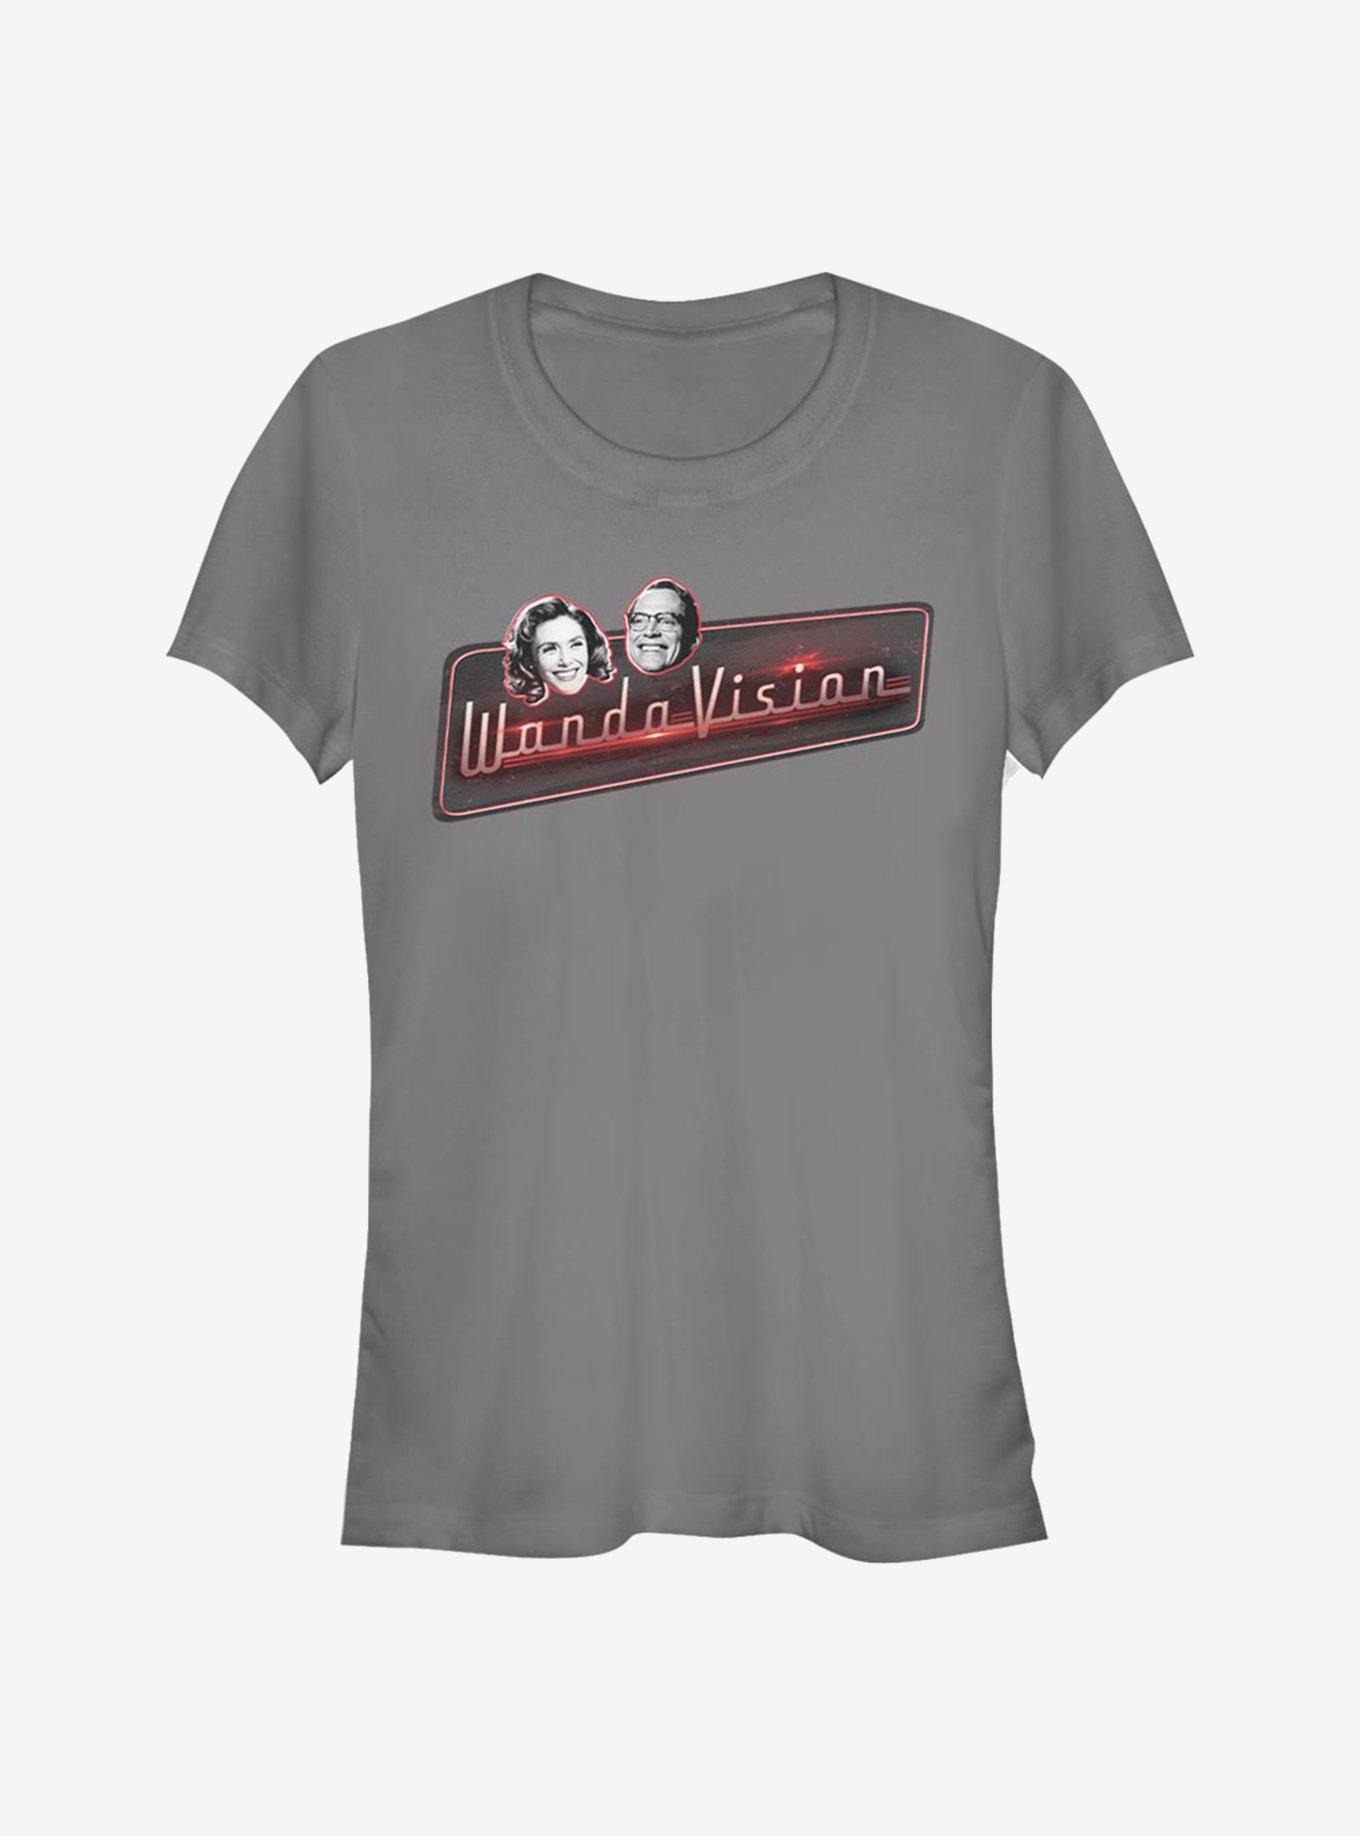 Marvel WandaVision All Smiles Girls T-Shirt